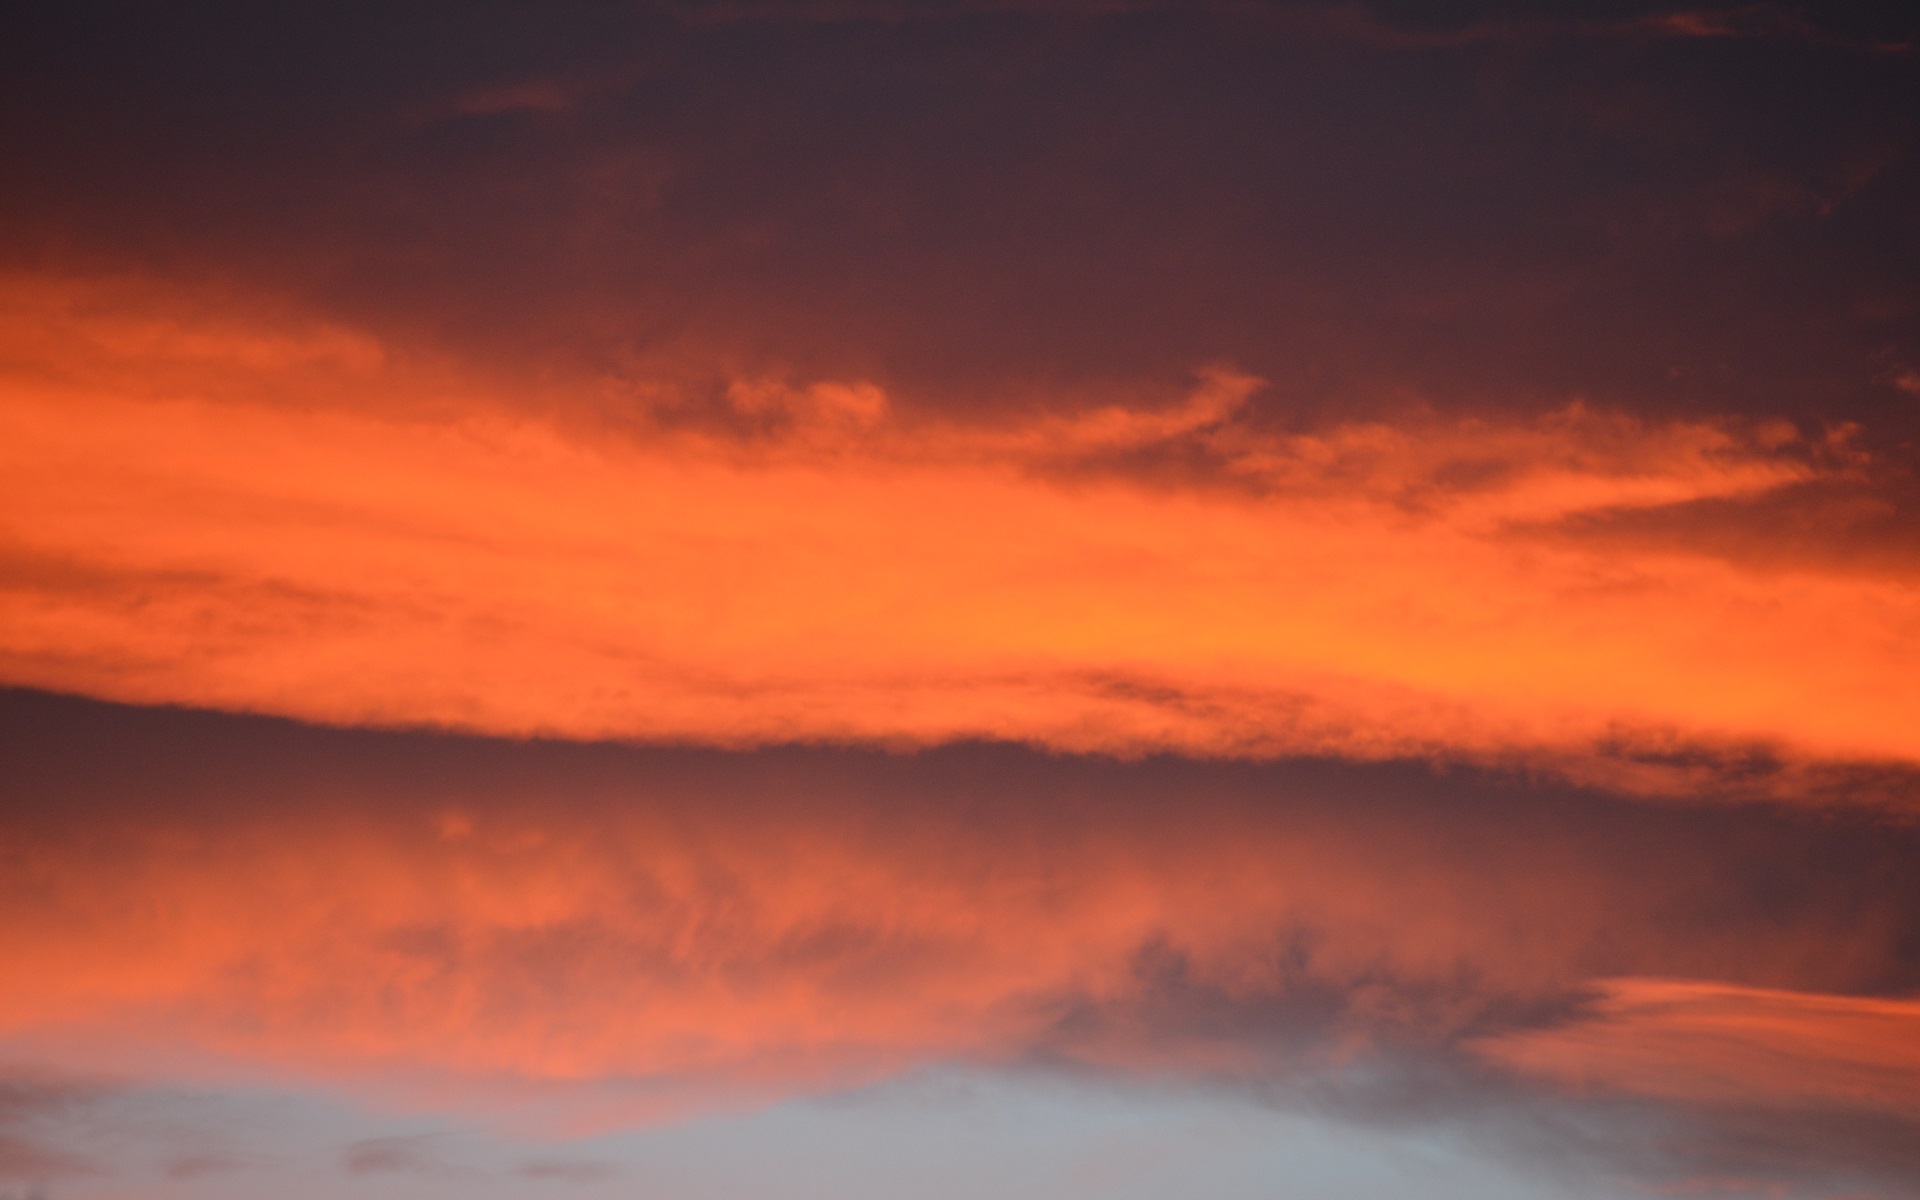 Bushfire Sky by lonewolf6738